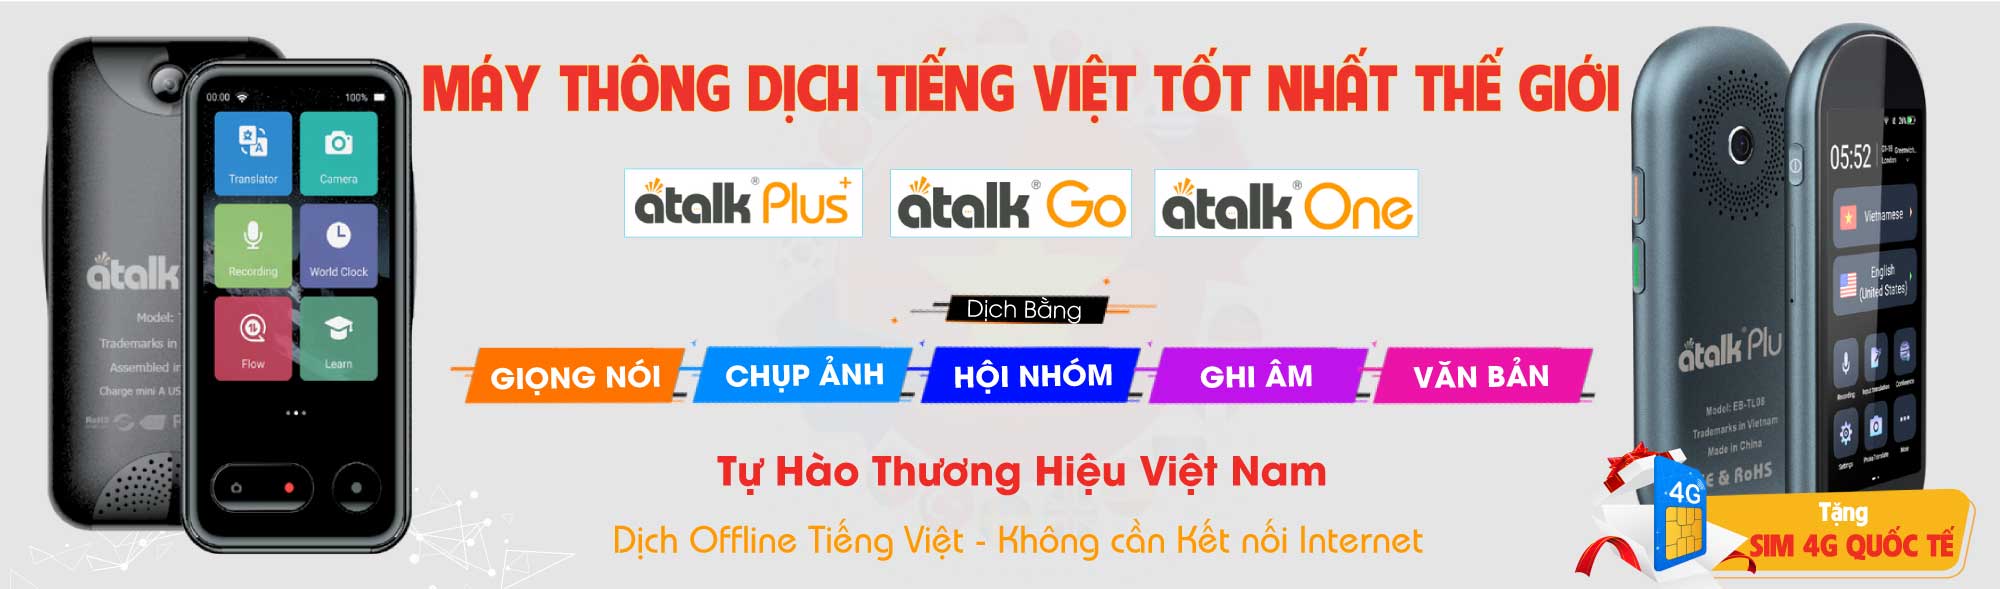 Máy Thông Dịch Tiếng Việt Tốt Nhất Thế Giới